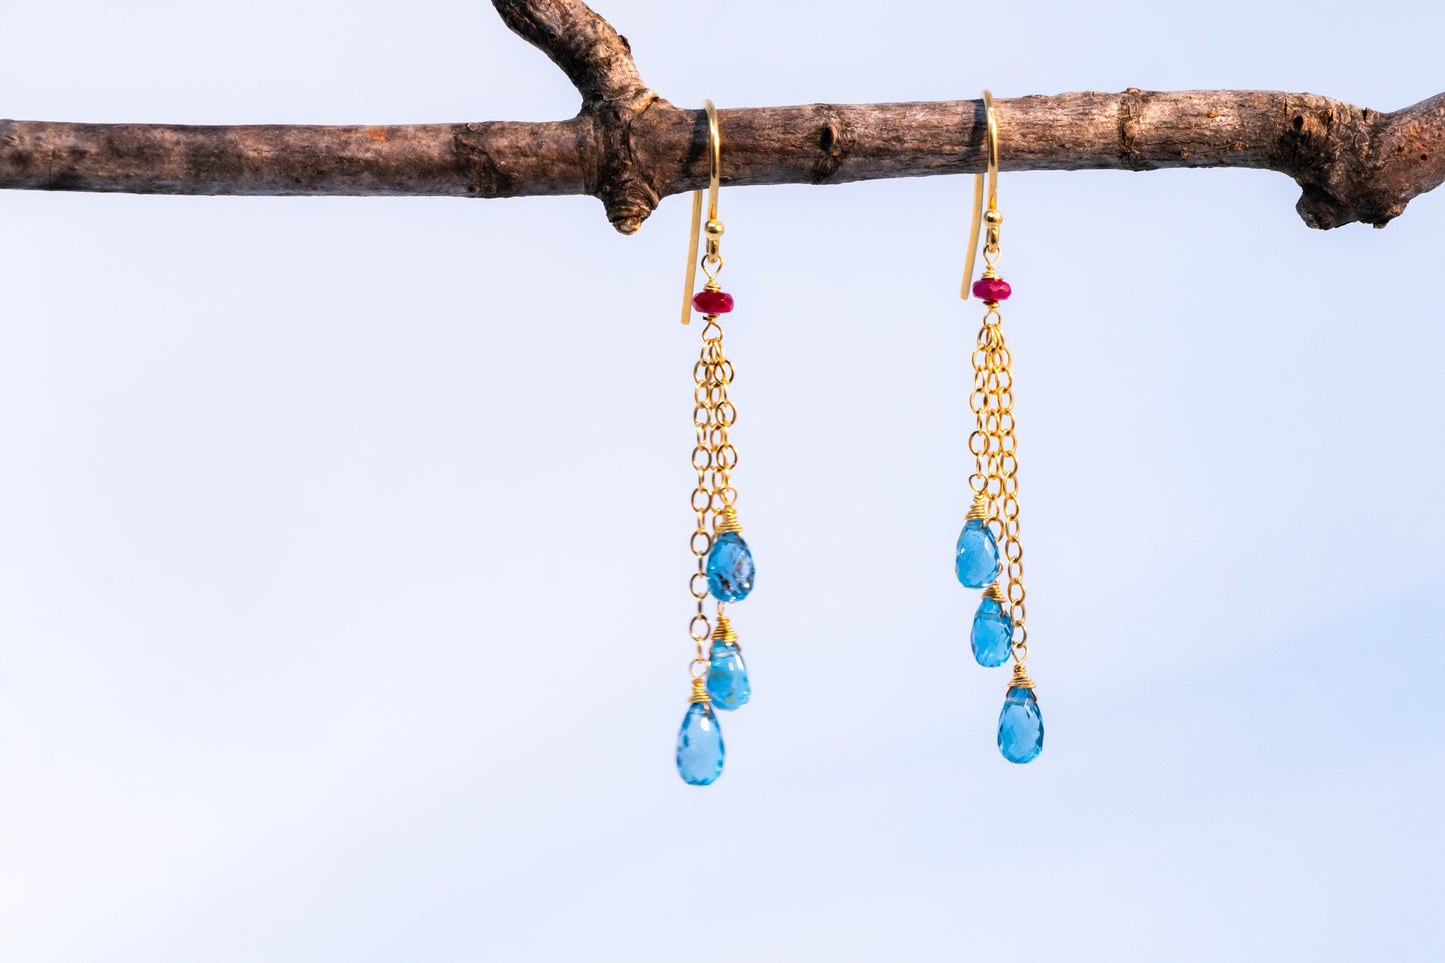 Topaz & Ruby 14k gold chain earrings